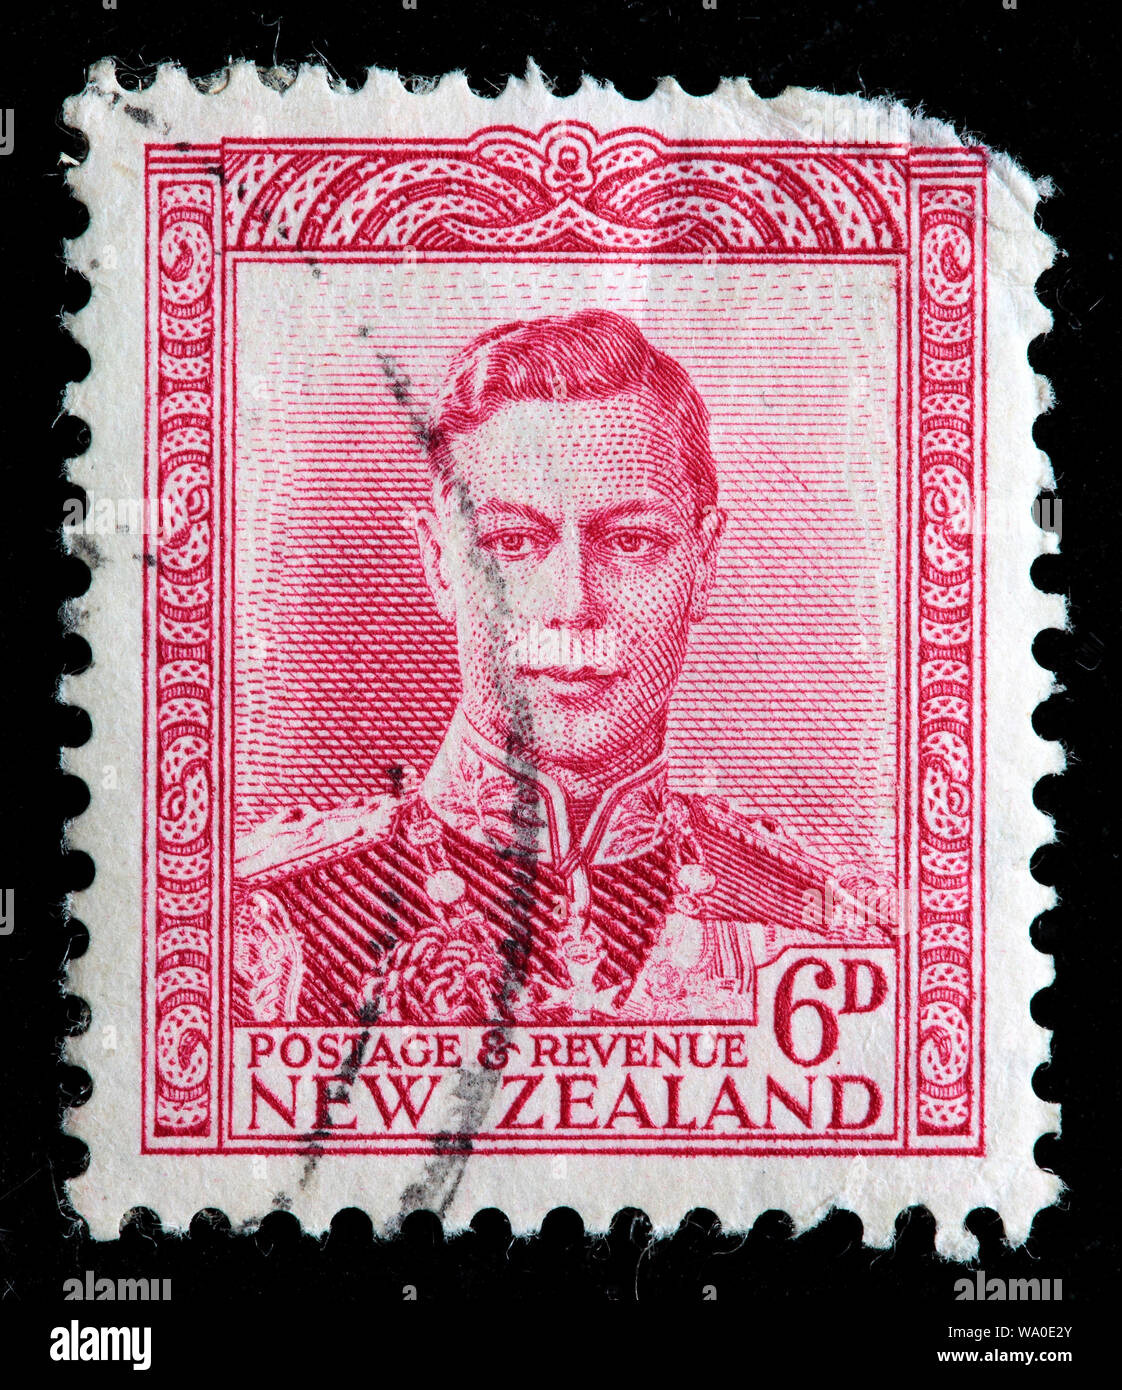 Le roi George VI (1936-1952), timbre-poste, Nouvelle-Zélande, 1947 Banque D'Images